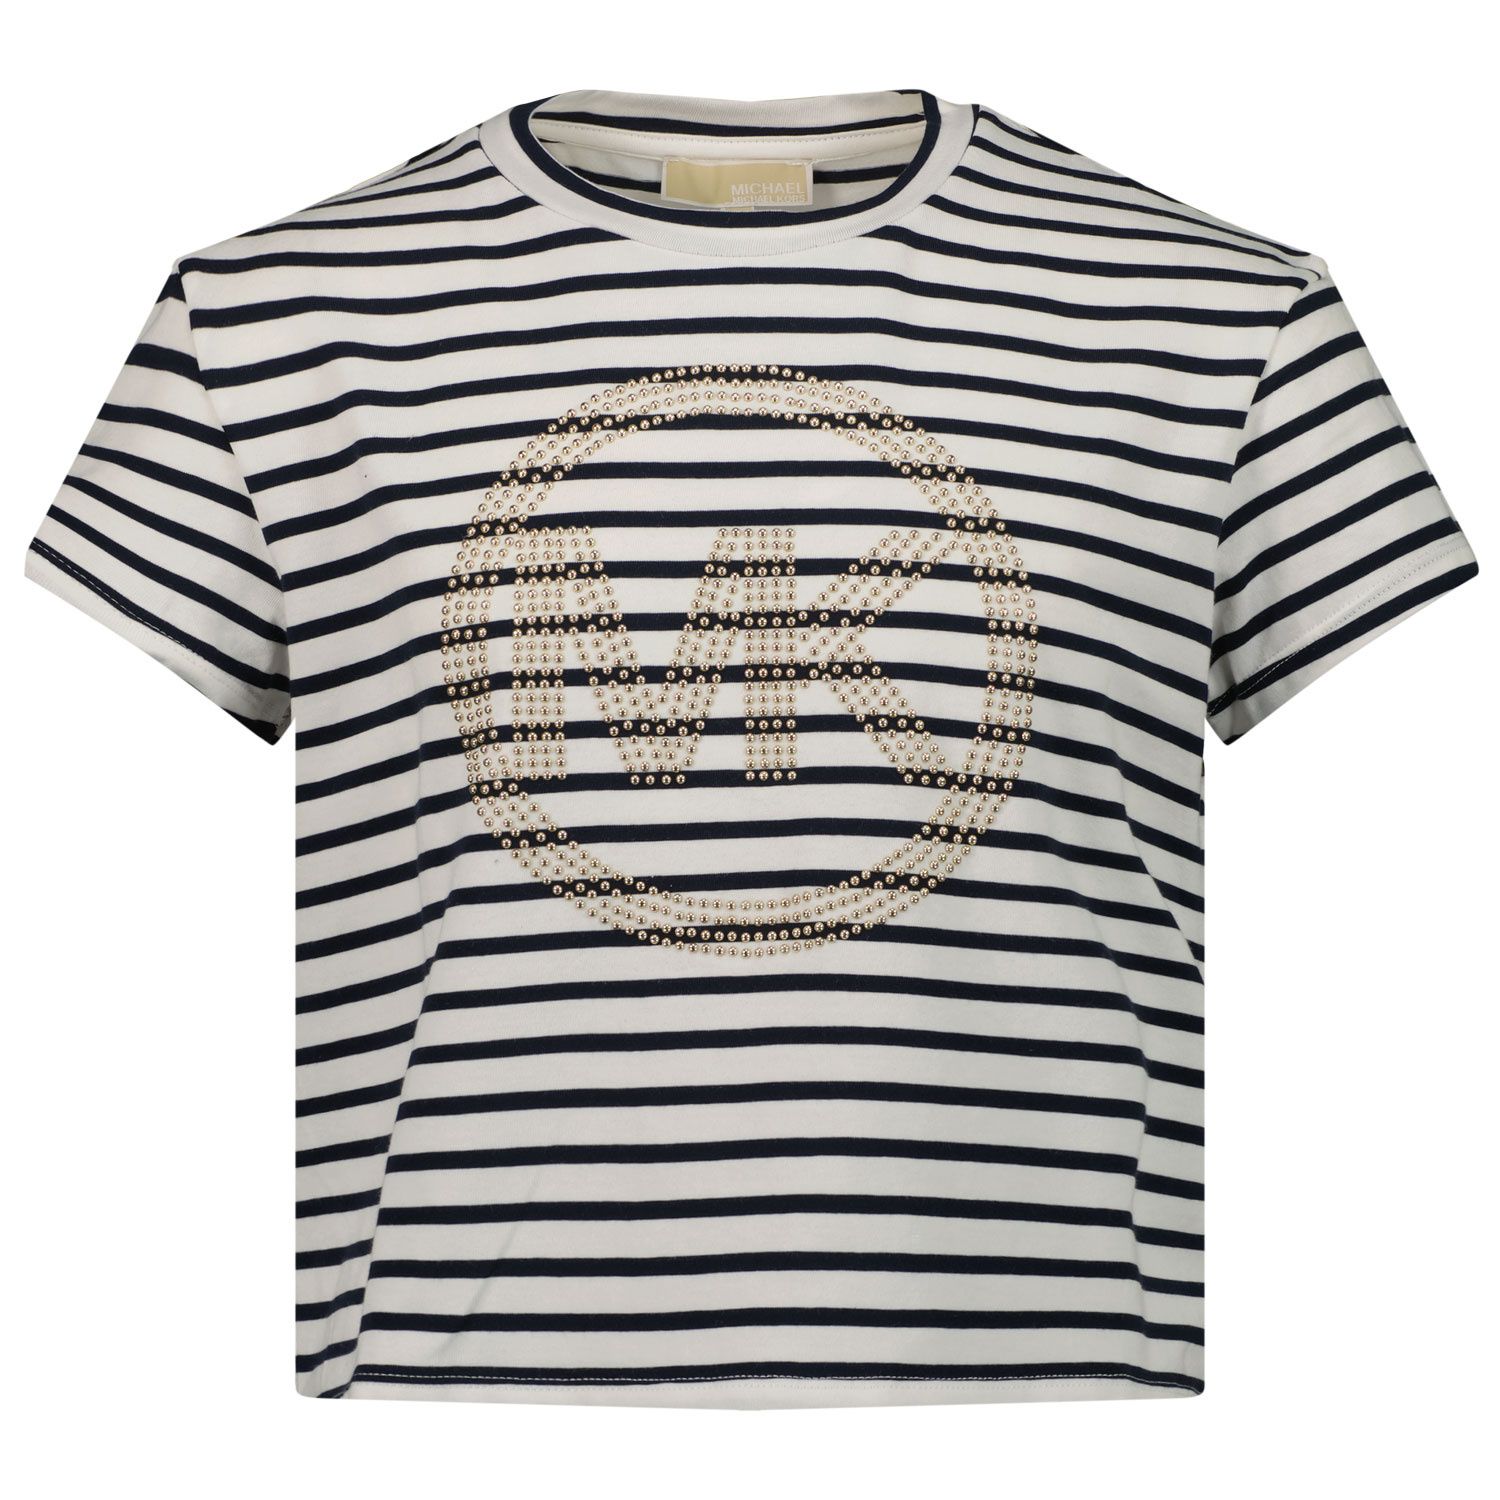 Afbeelding van Michael Kors R15152 kinder t-shirt navy